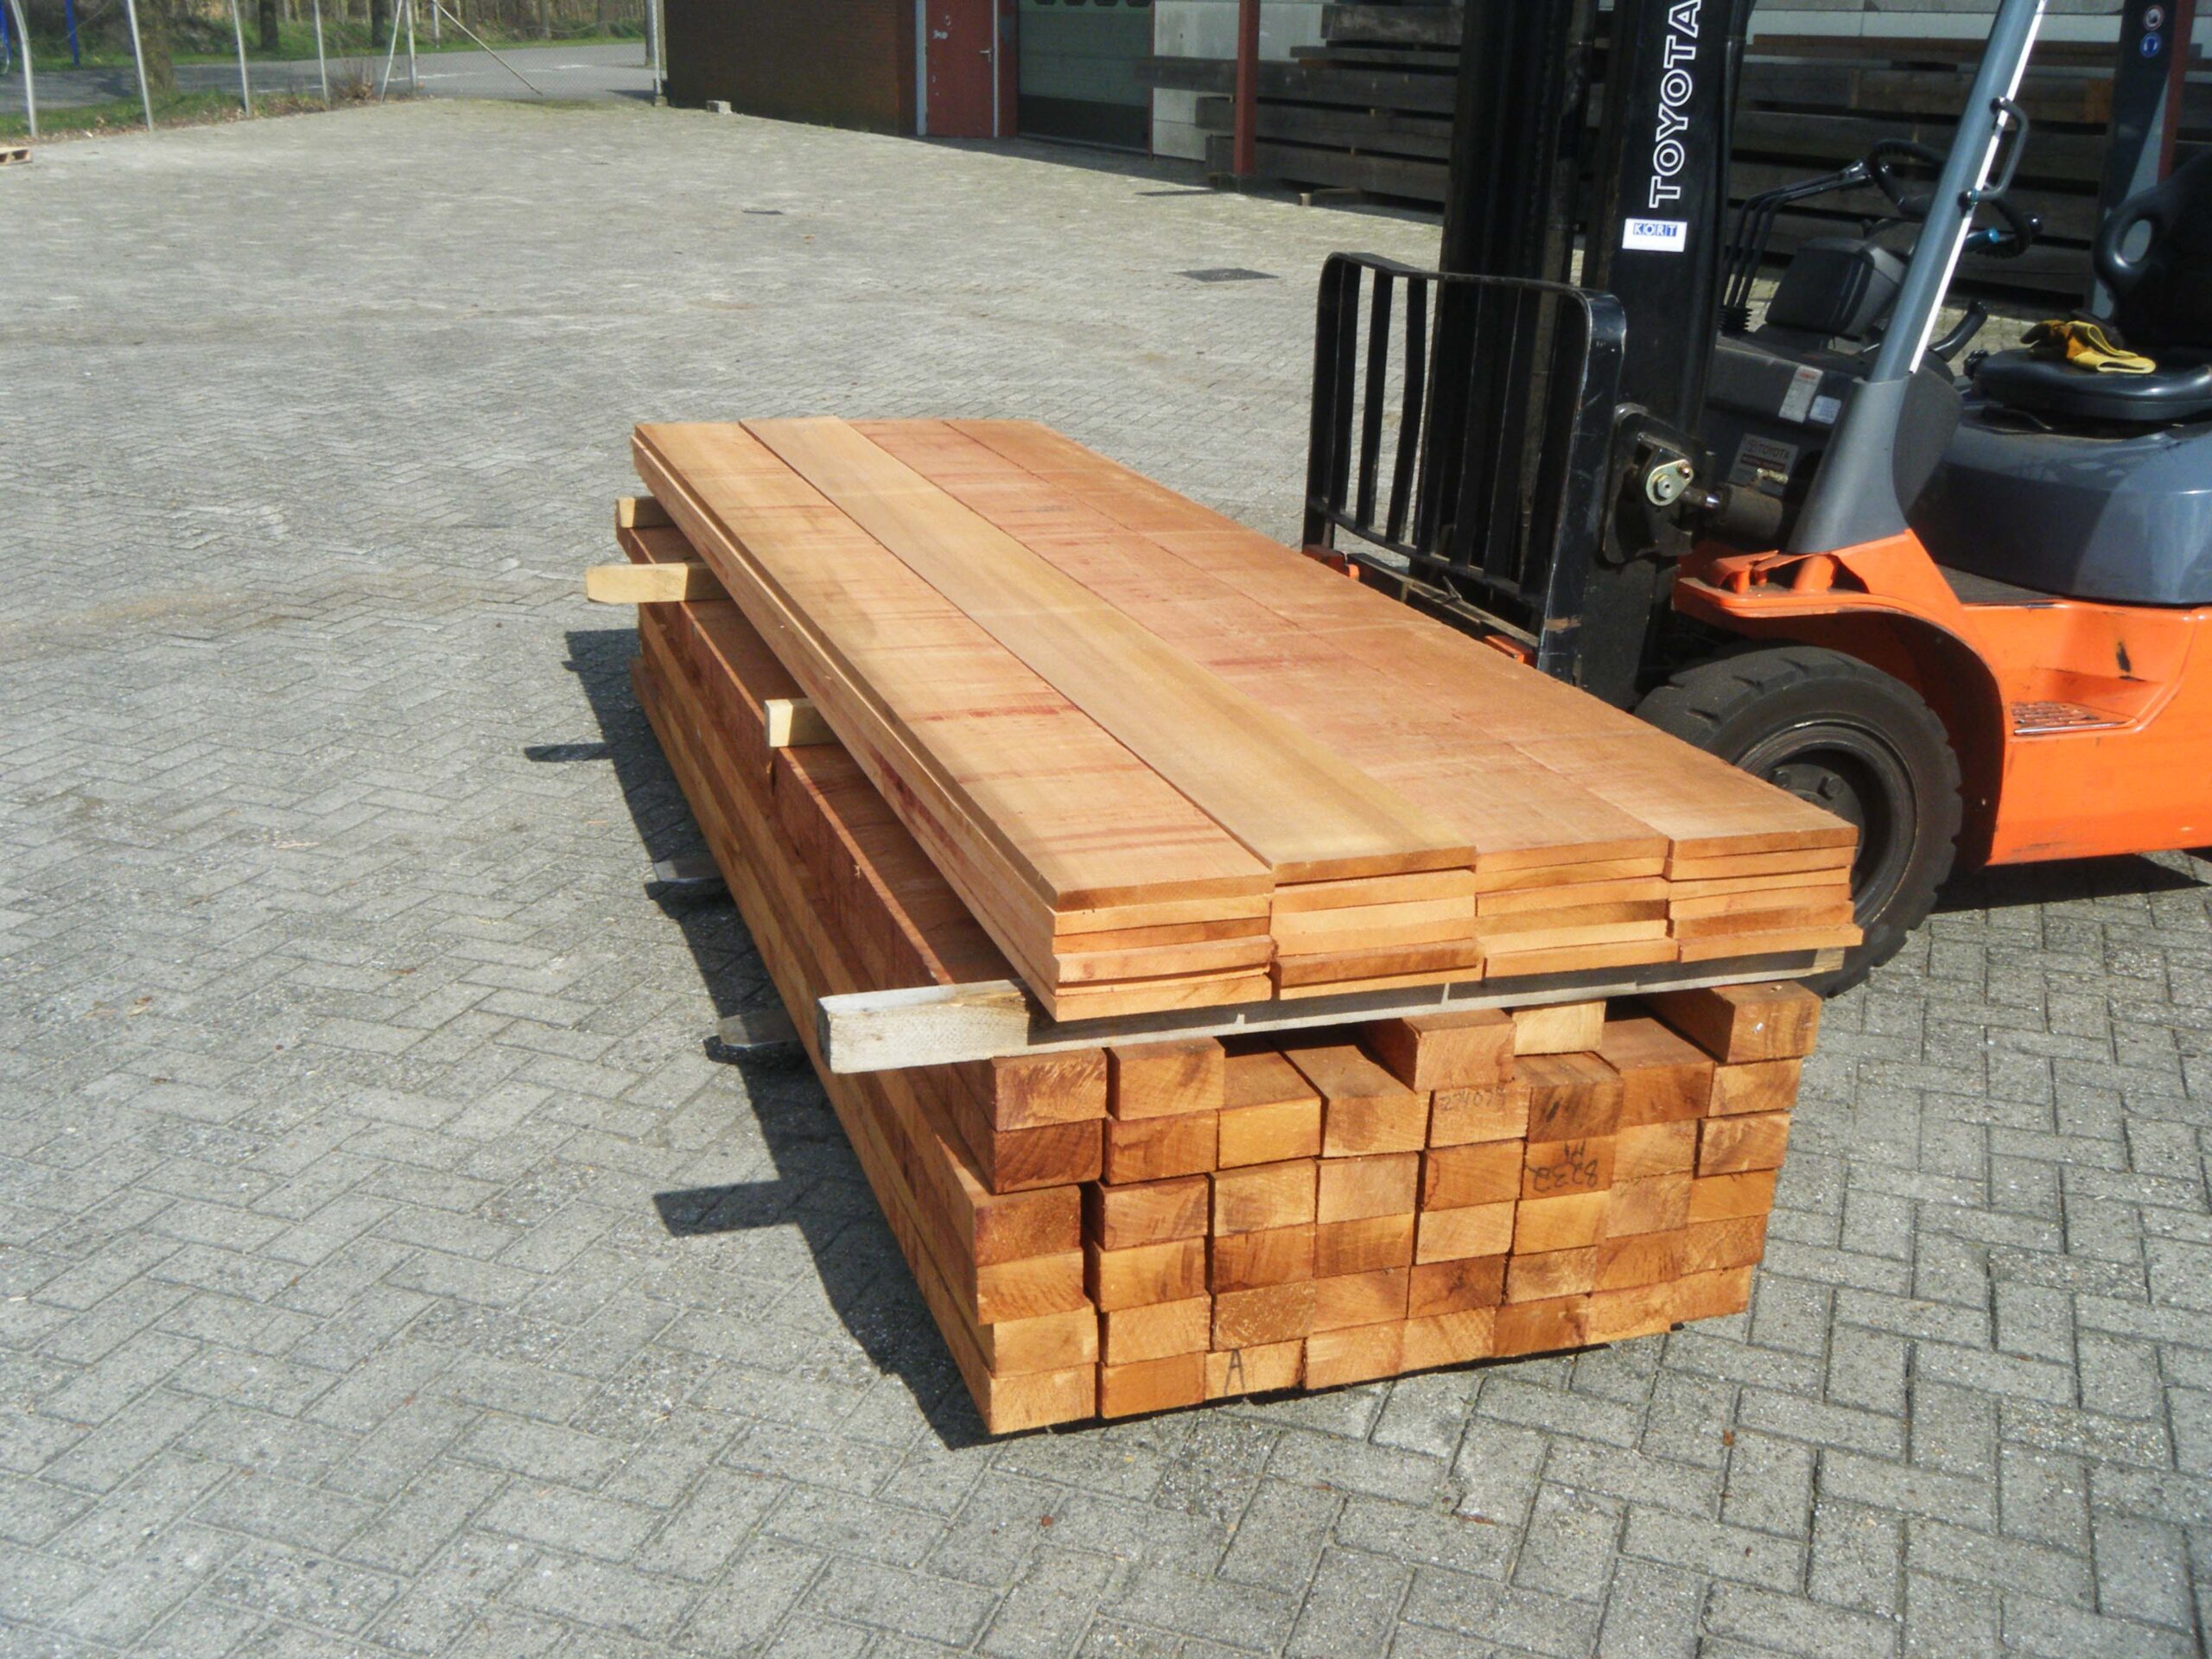 Reparatie mogelijk Scarp beroemd Red Cedar hout kopen? Houtleverancier Fijnhout Drenthe